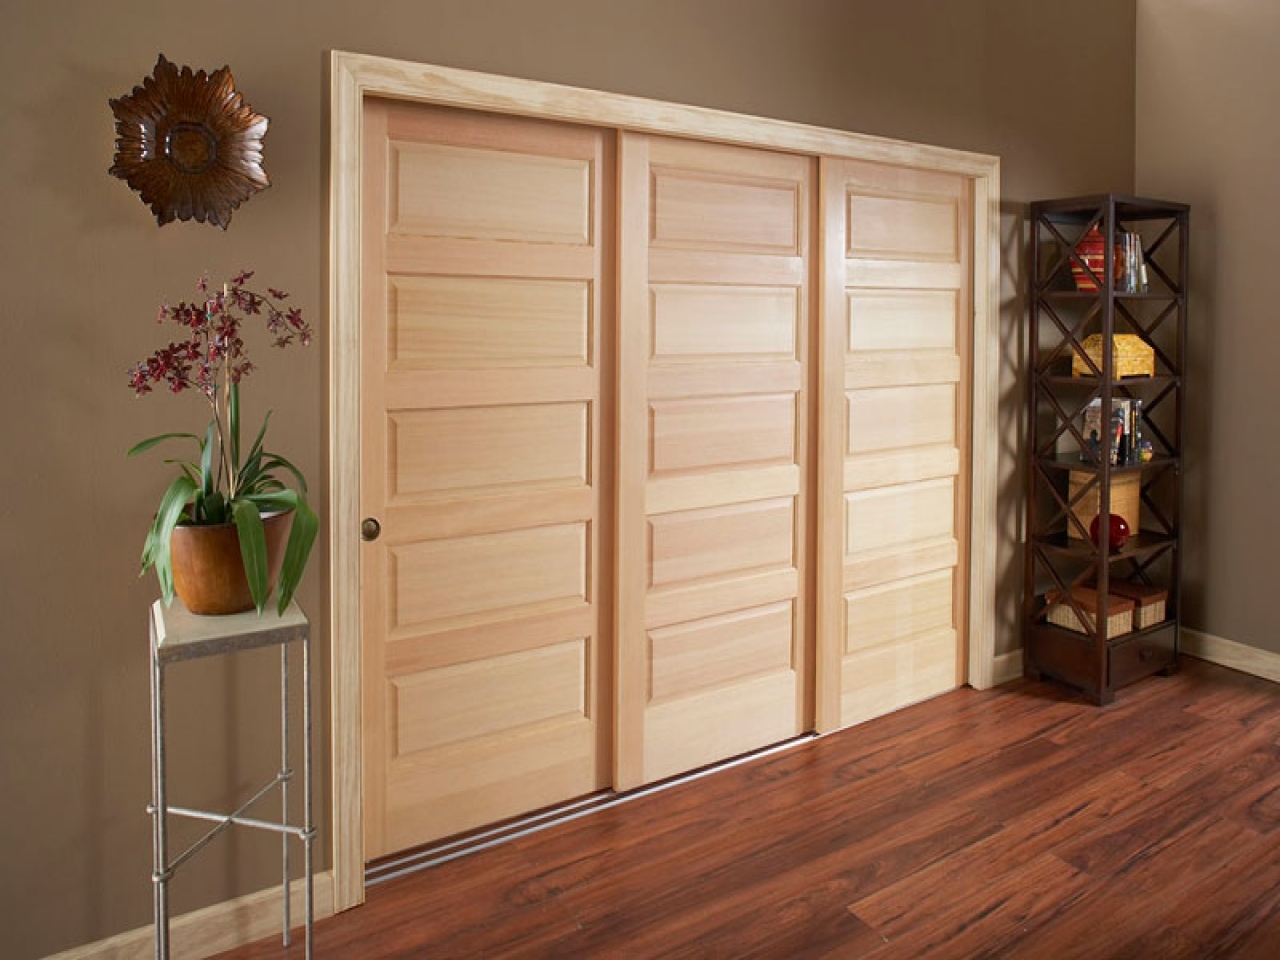 Wood Sliding Closet Doors Hardwarewooden pass closet door hardware cabinet hardware room